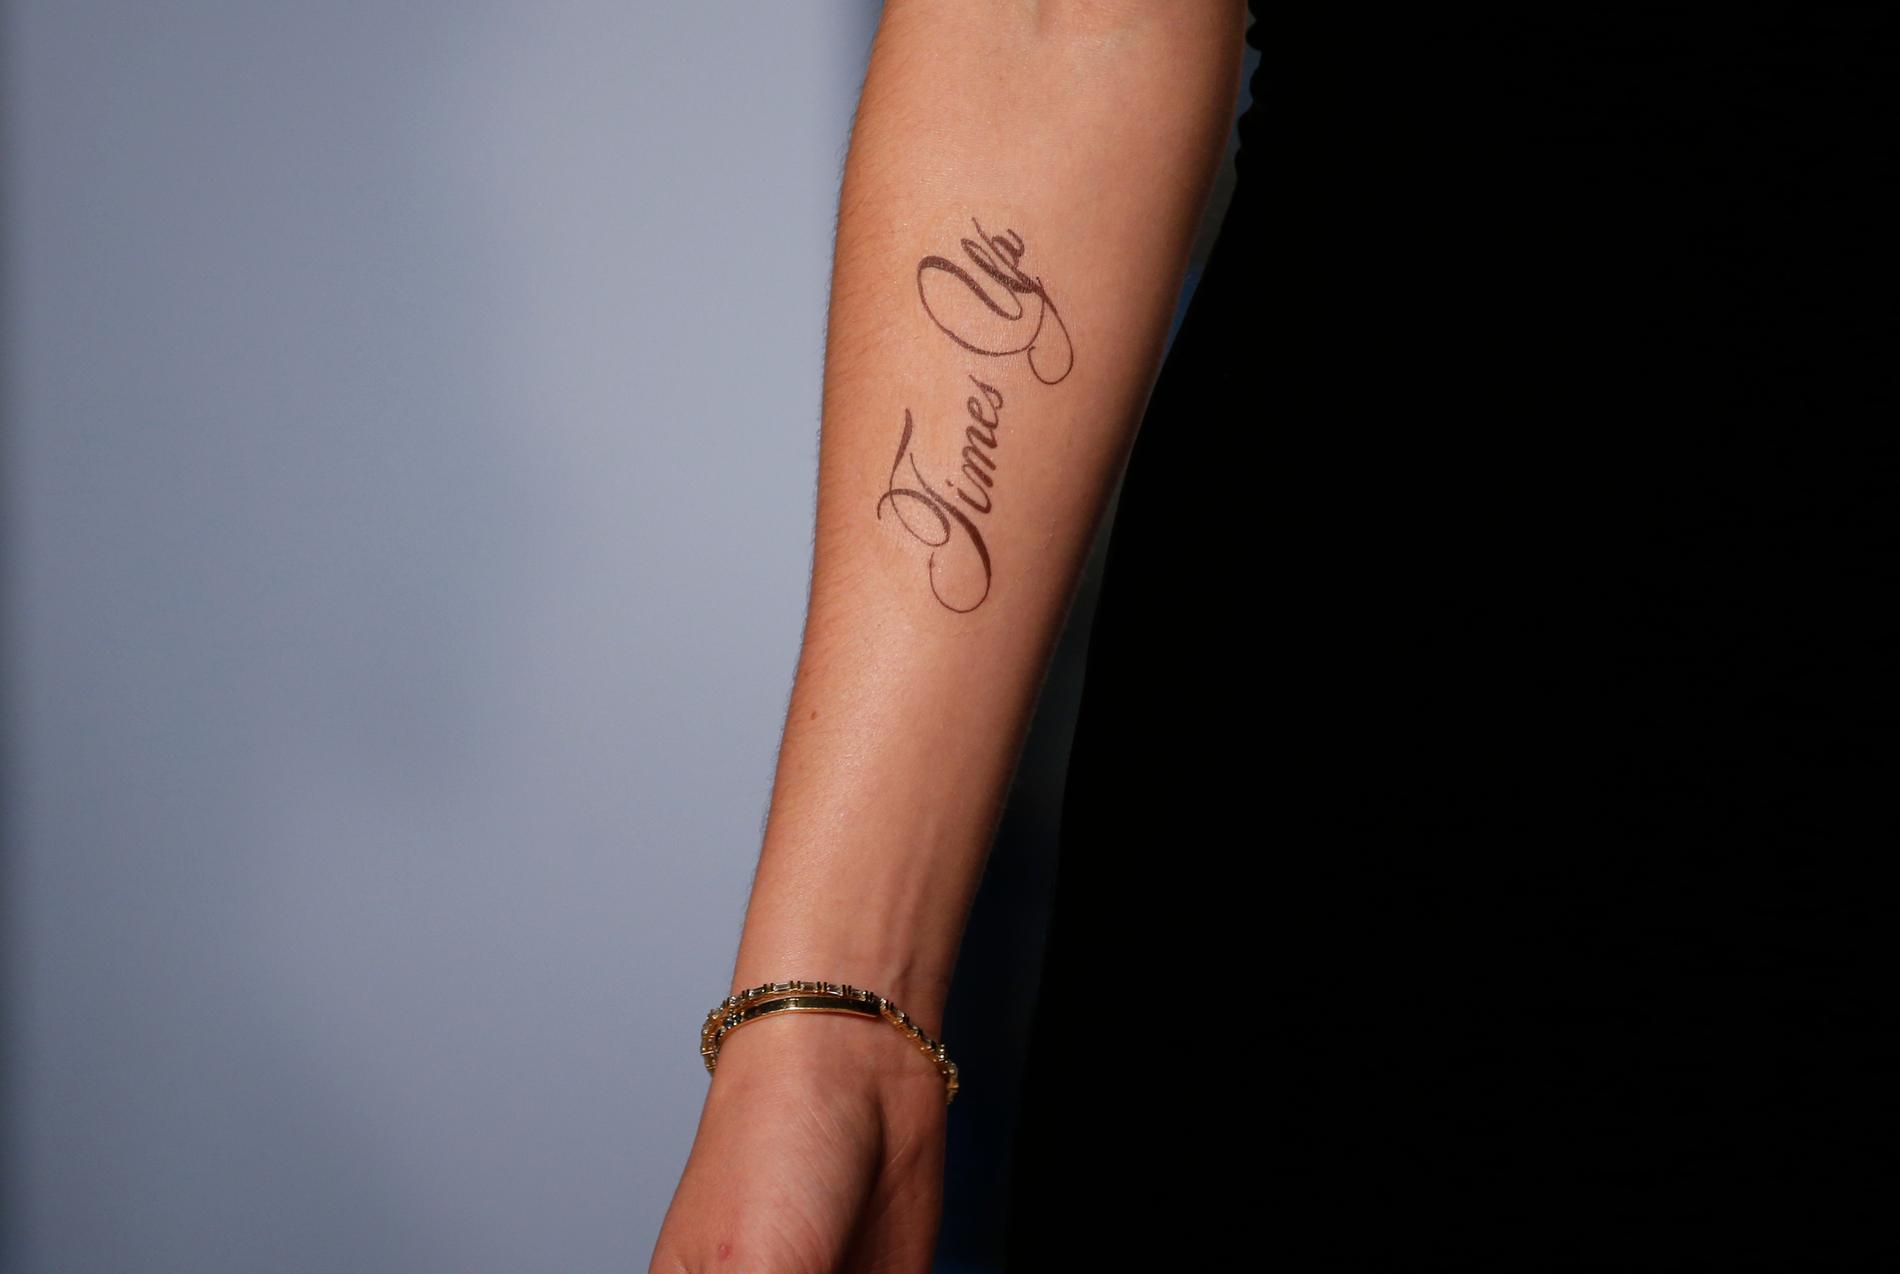 Emma Watsons tatuering var felstavad. Rätt ska vara: ”Time’s up”.